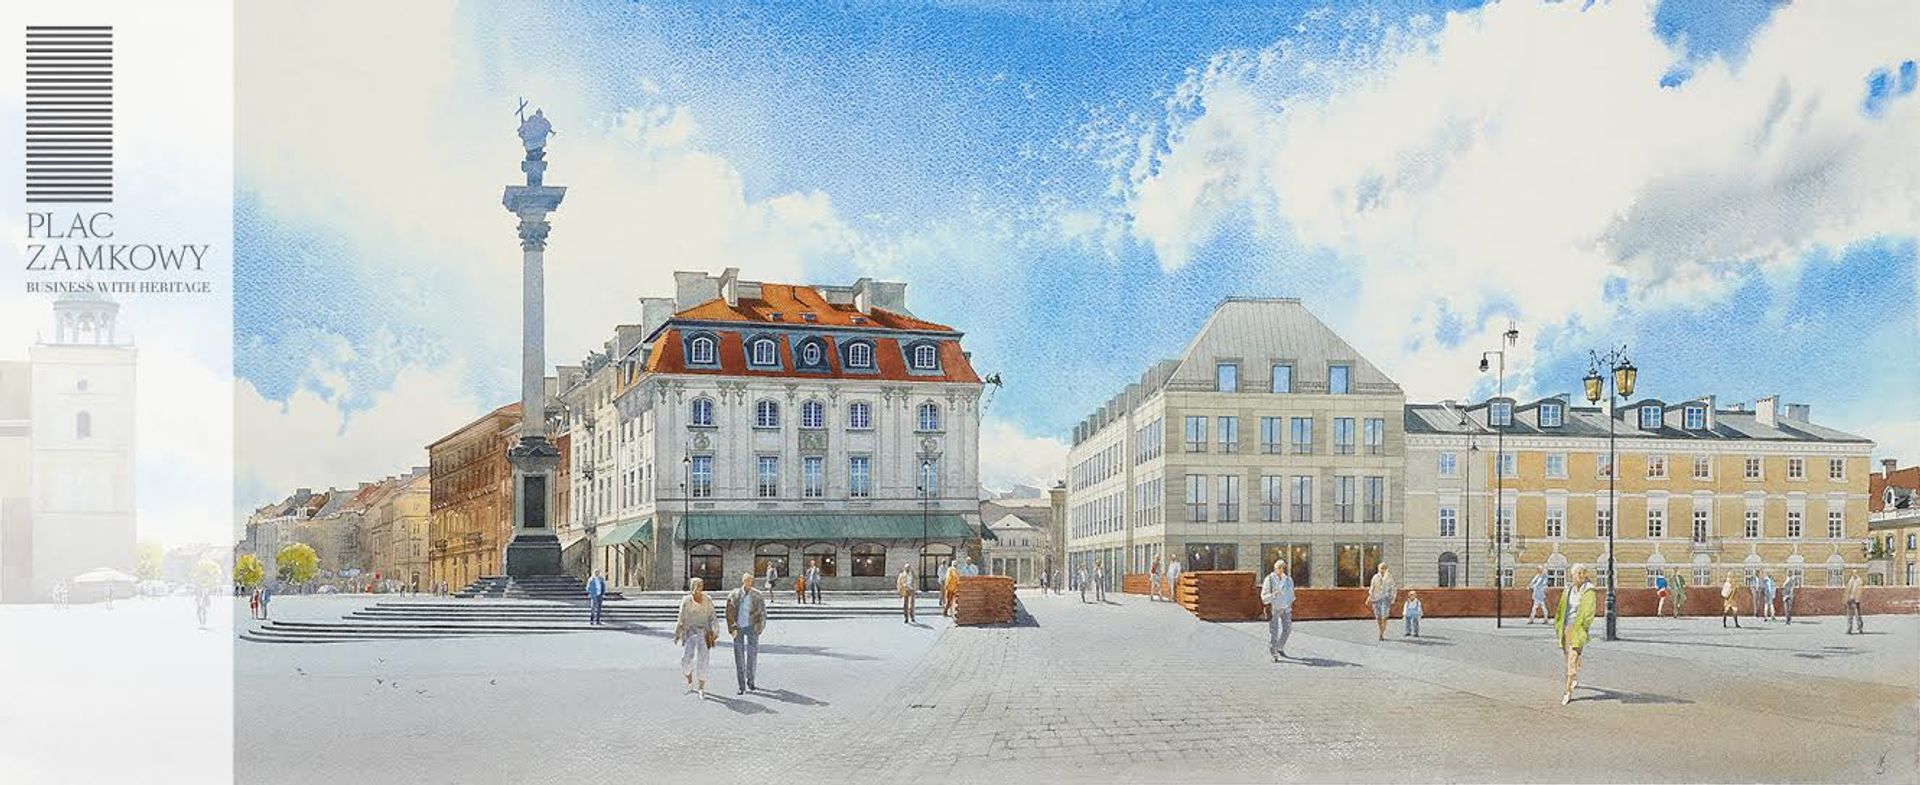  Senatorska Investment wprowadza zmiany w projekcie inwestycji   Plac Zamkowy &#8211; Business with Heritage